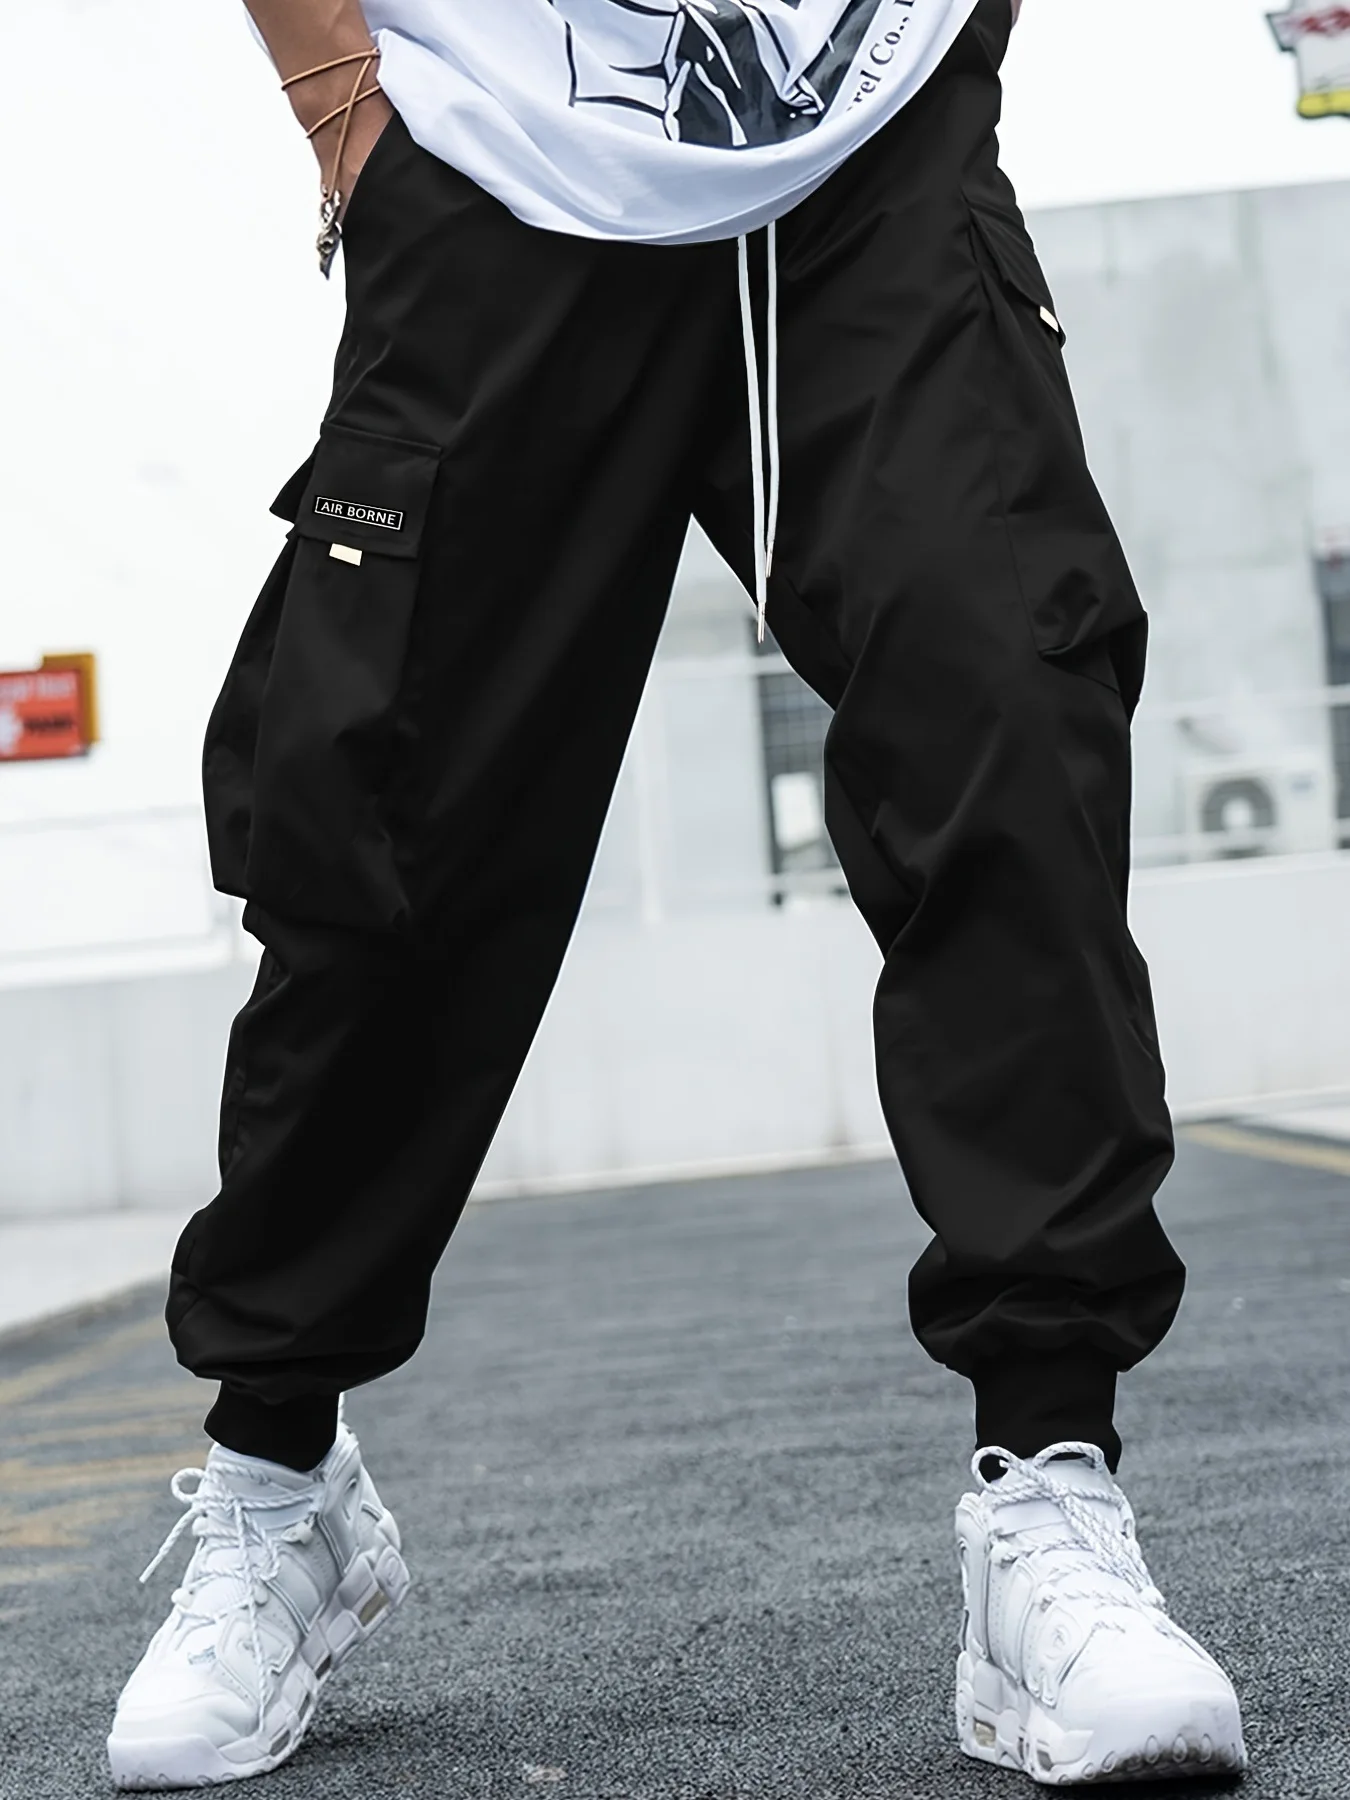 Men's new black multi-pocket pants with drawstring design hip-hop